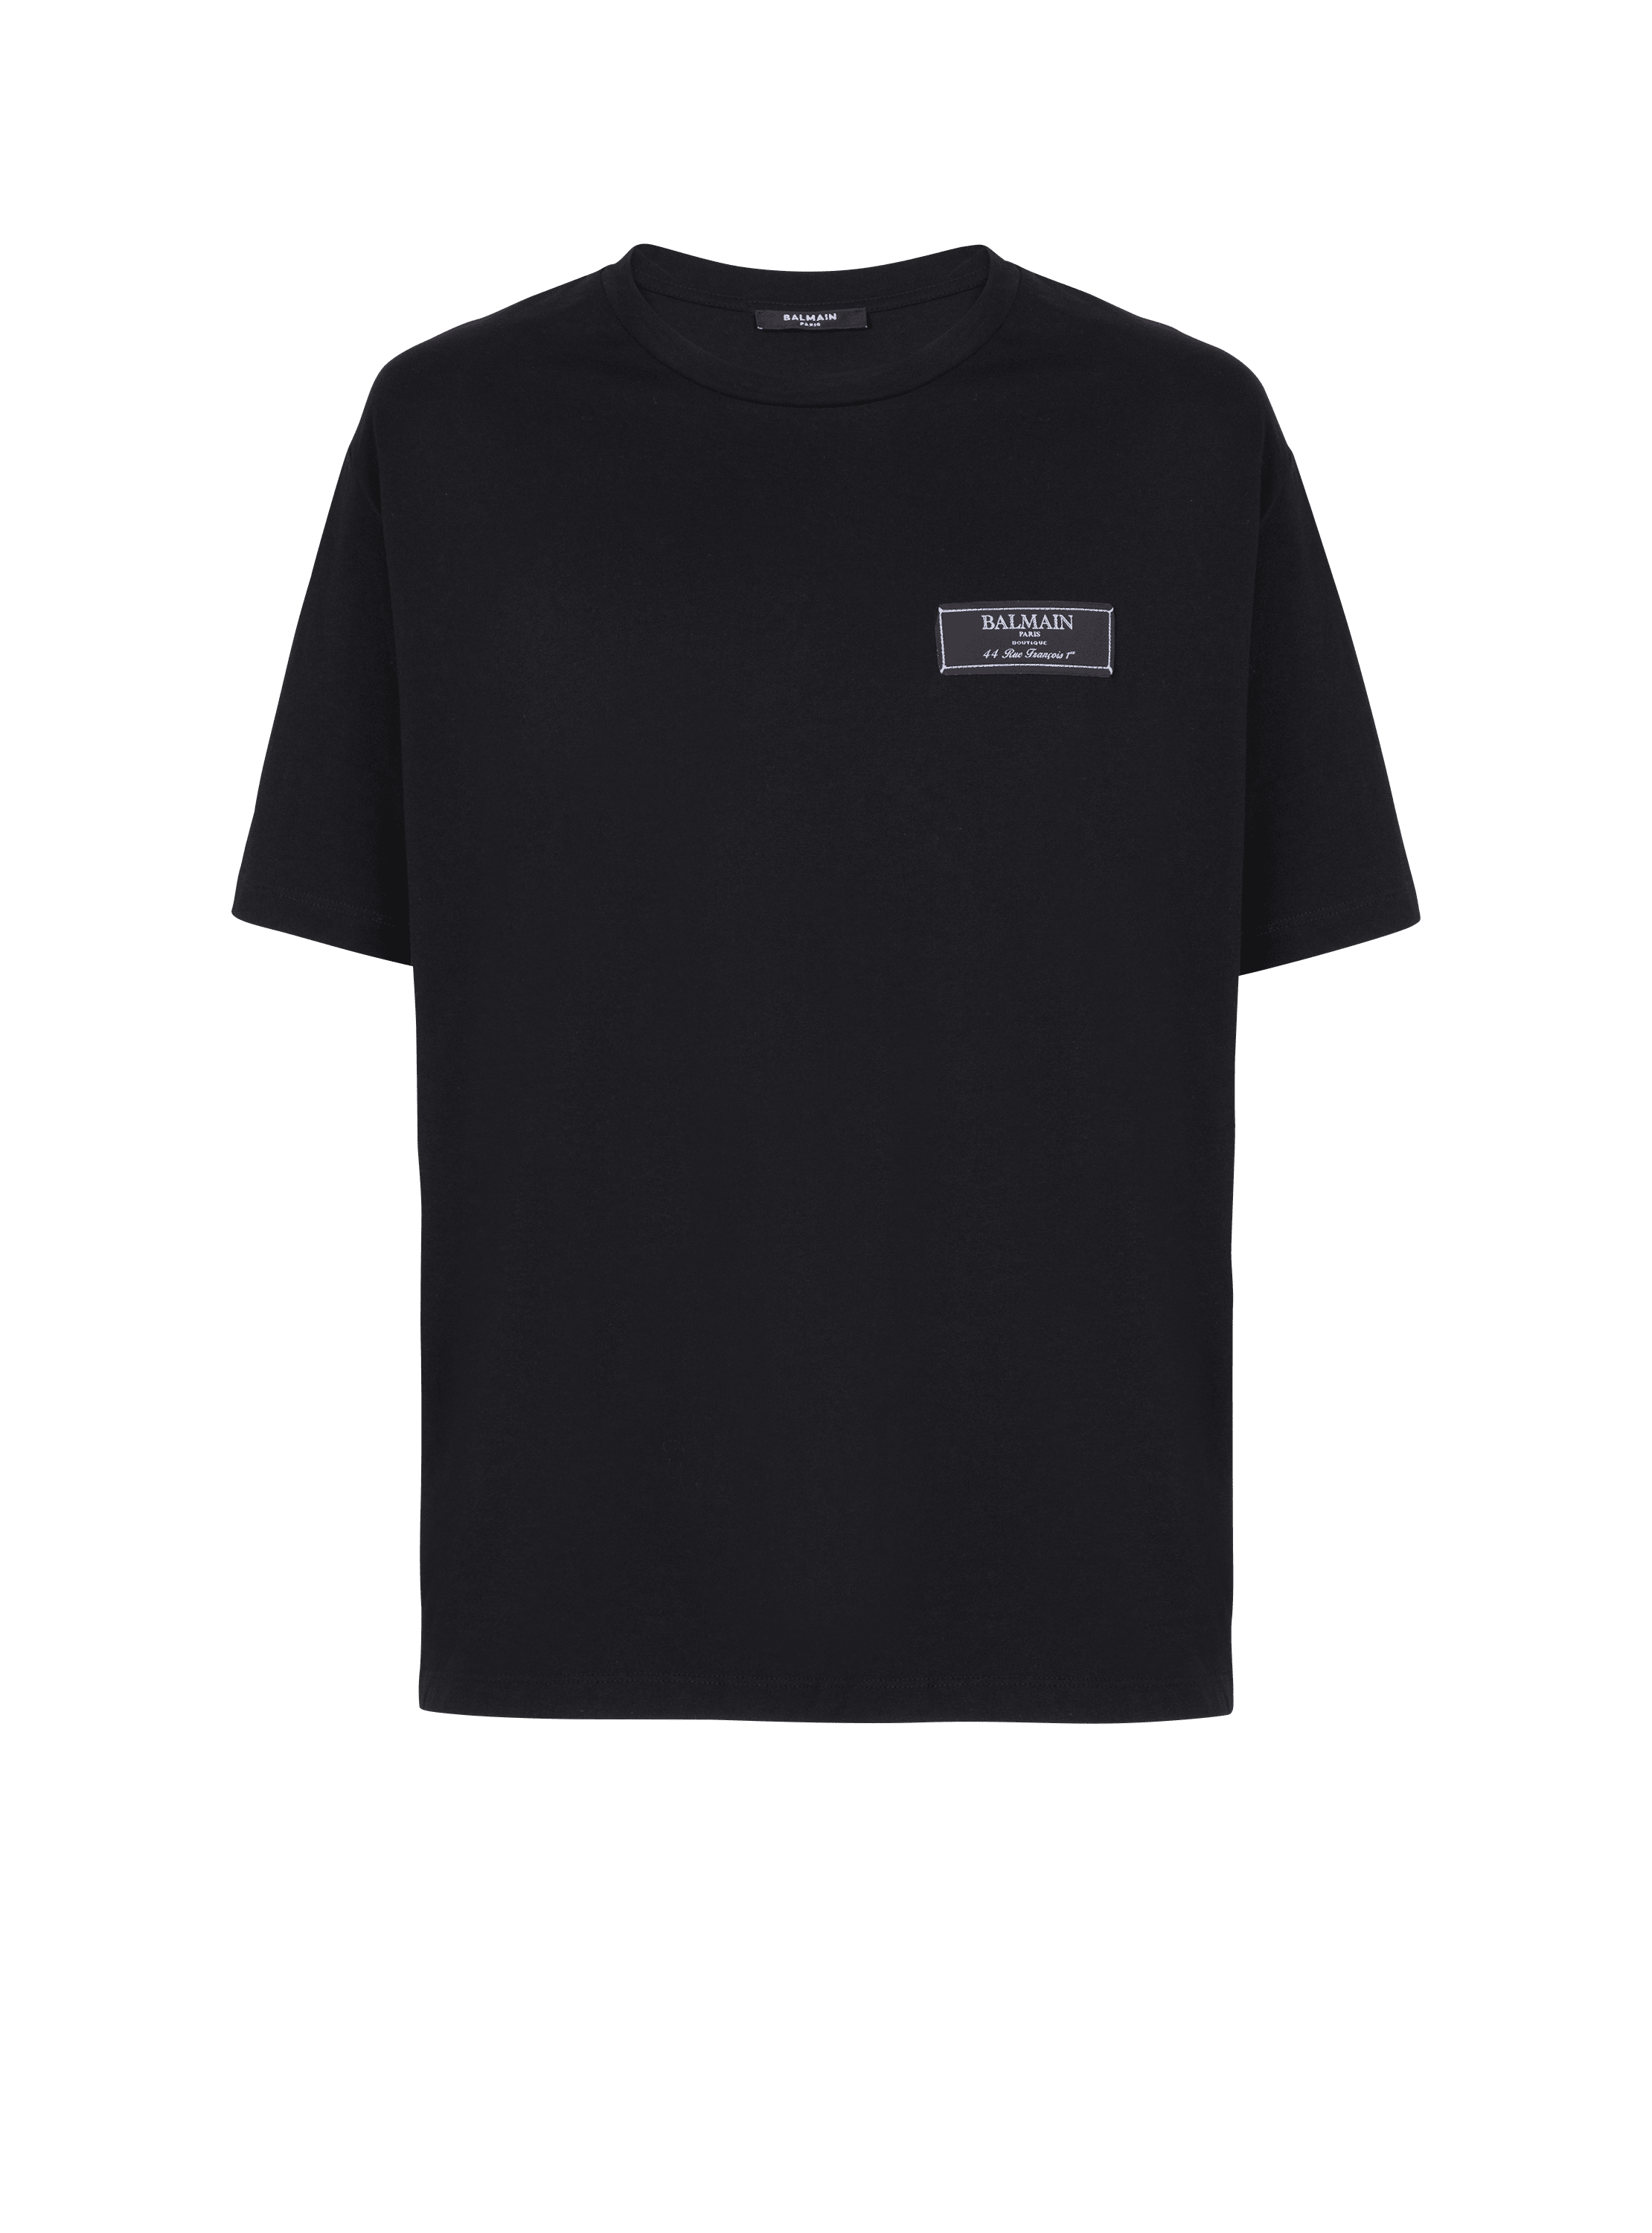 Camiseta con etiqueta de Balmain Paris, negro, hi-res